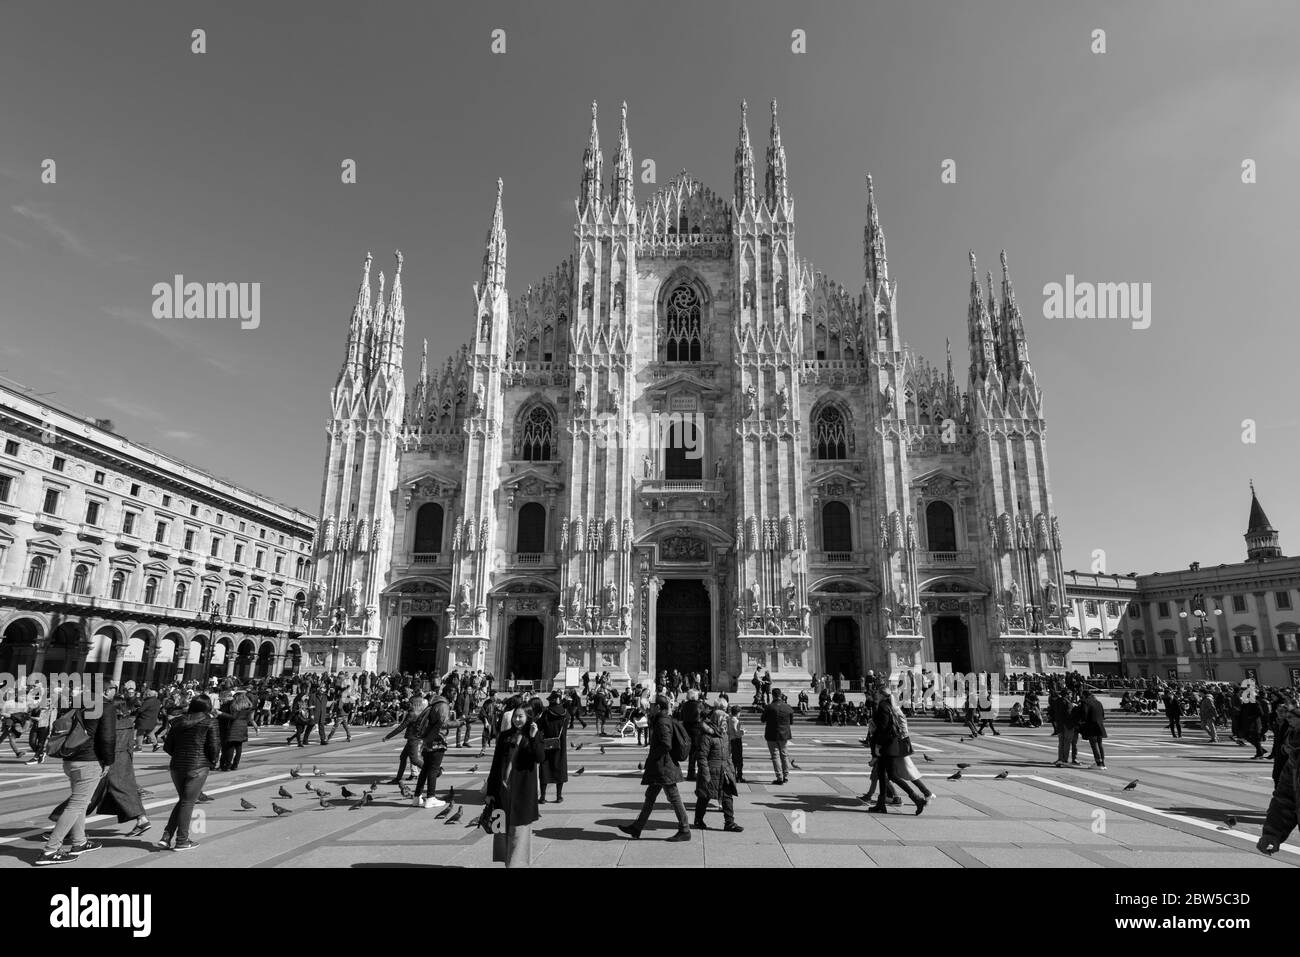 MILANO, ITALIA - 16 MARZO 2018: Immagine in bianco e nero del Duomo di Milano, importante cattedrale cattolica di Milano. Foto Stock